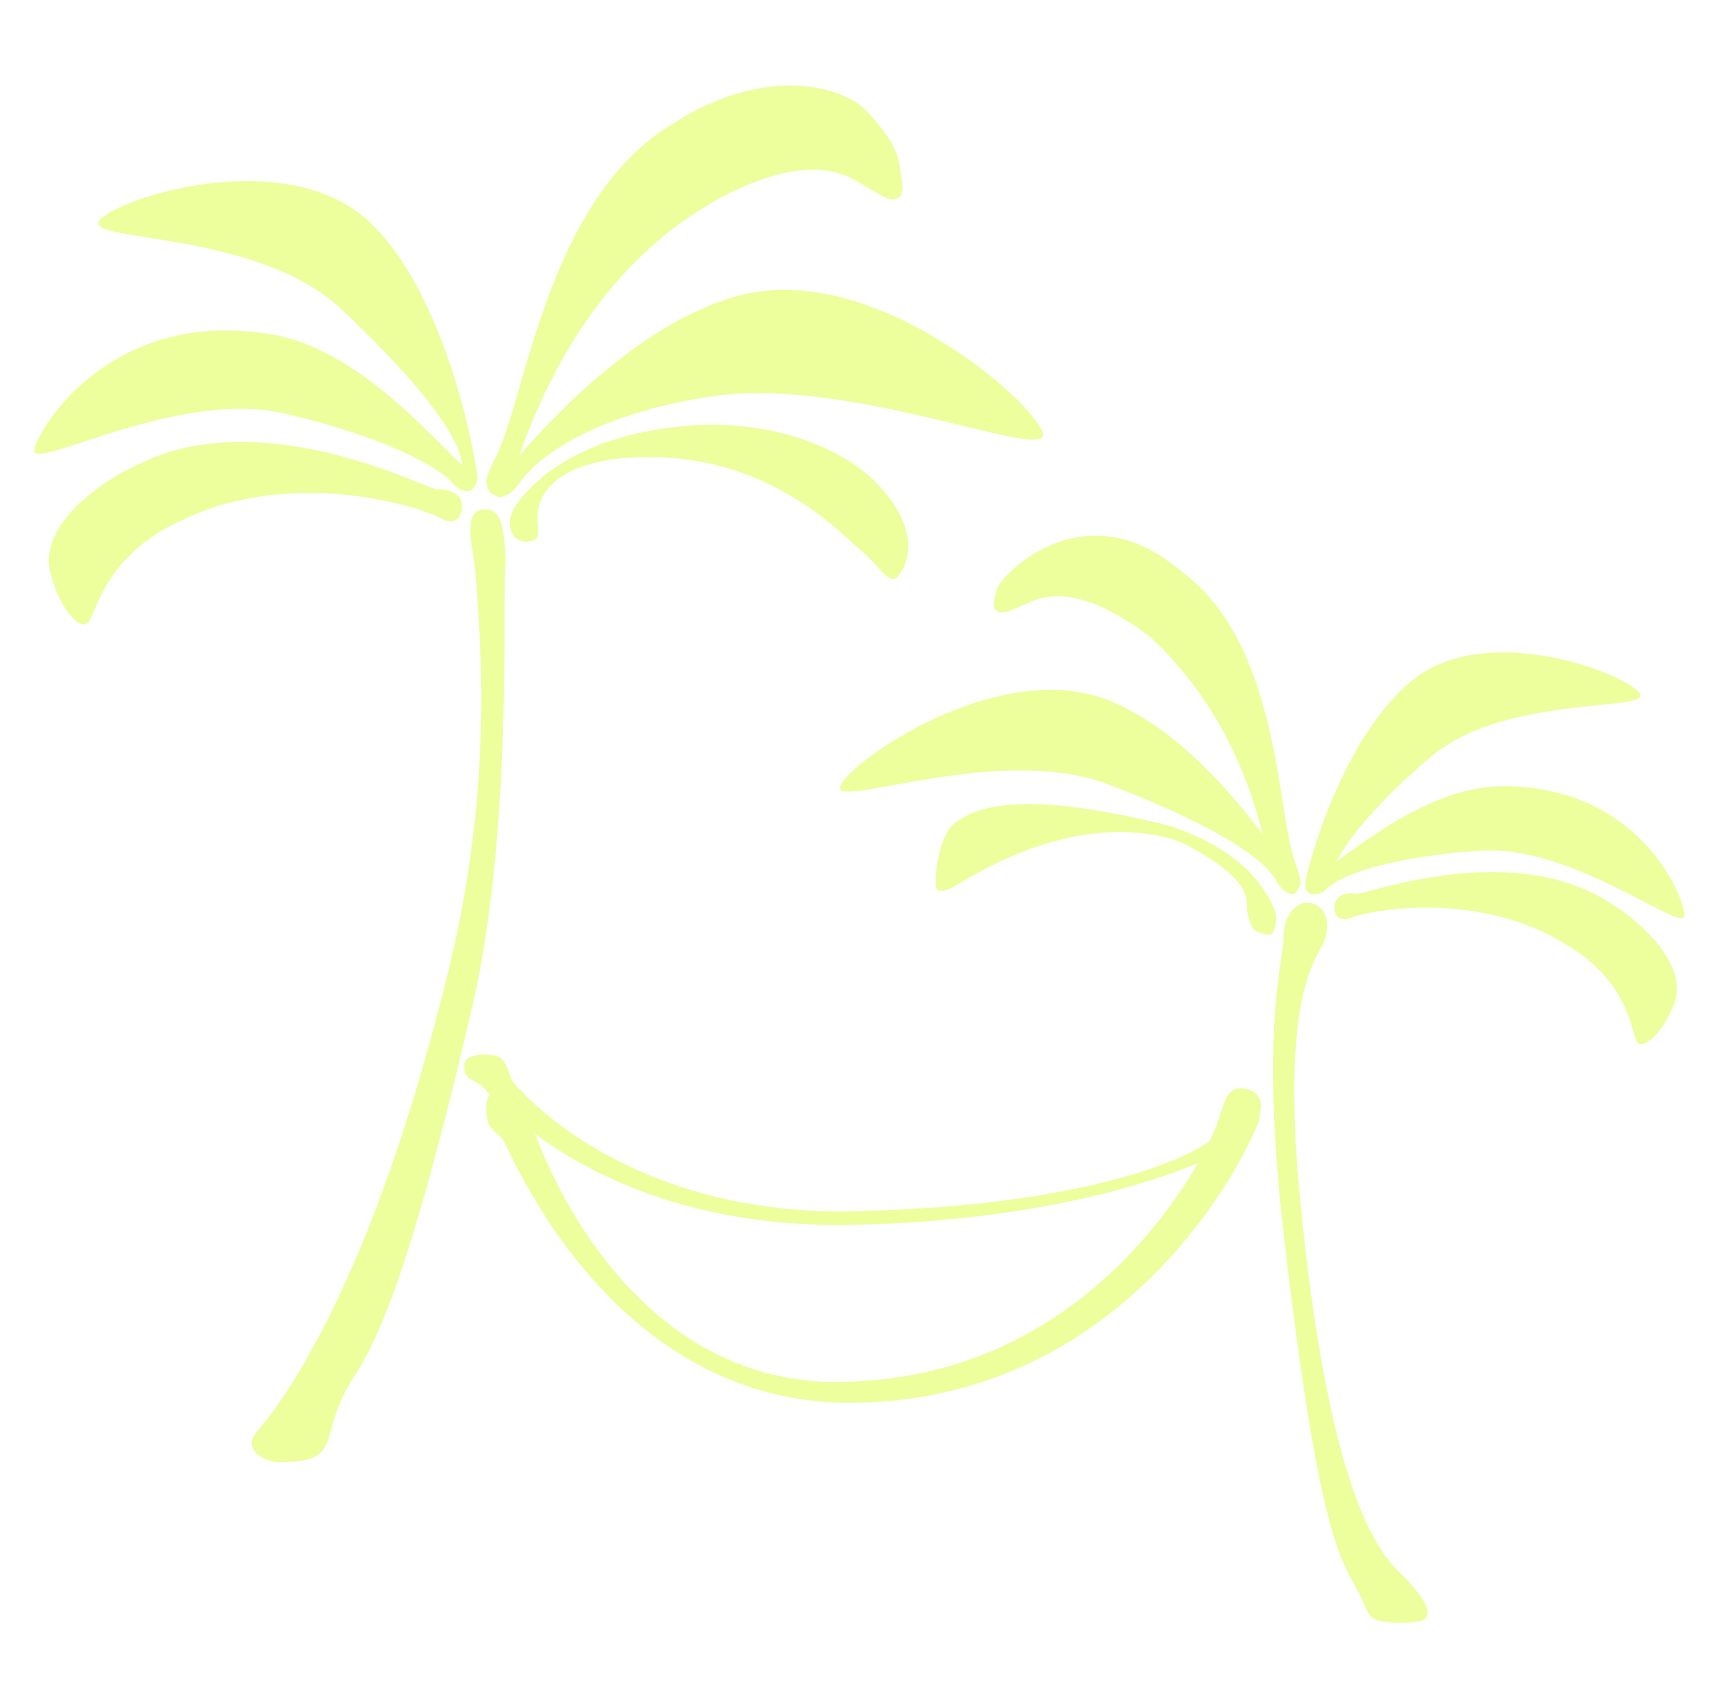 Die Illustration zeigt zwei Palmen, die in der Mitte eine Hängematte verbindet